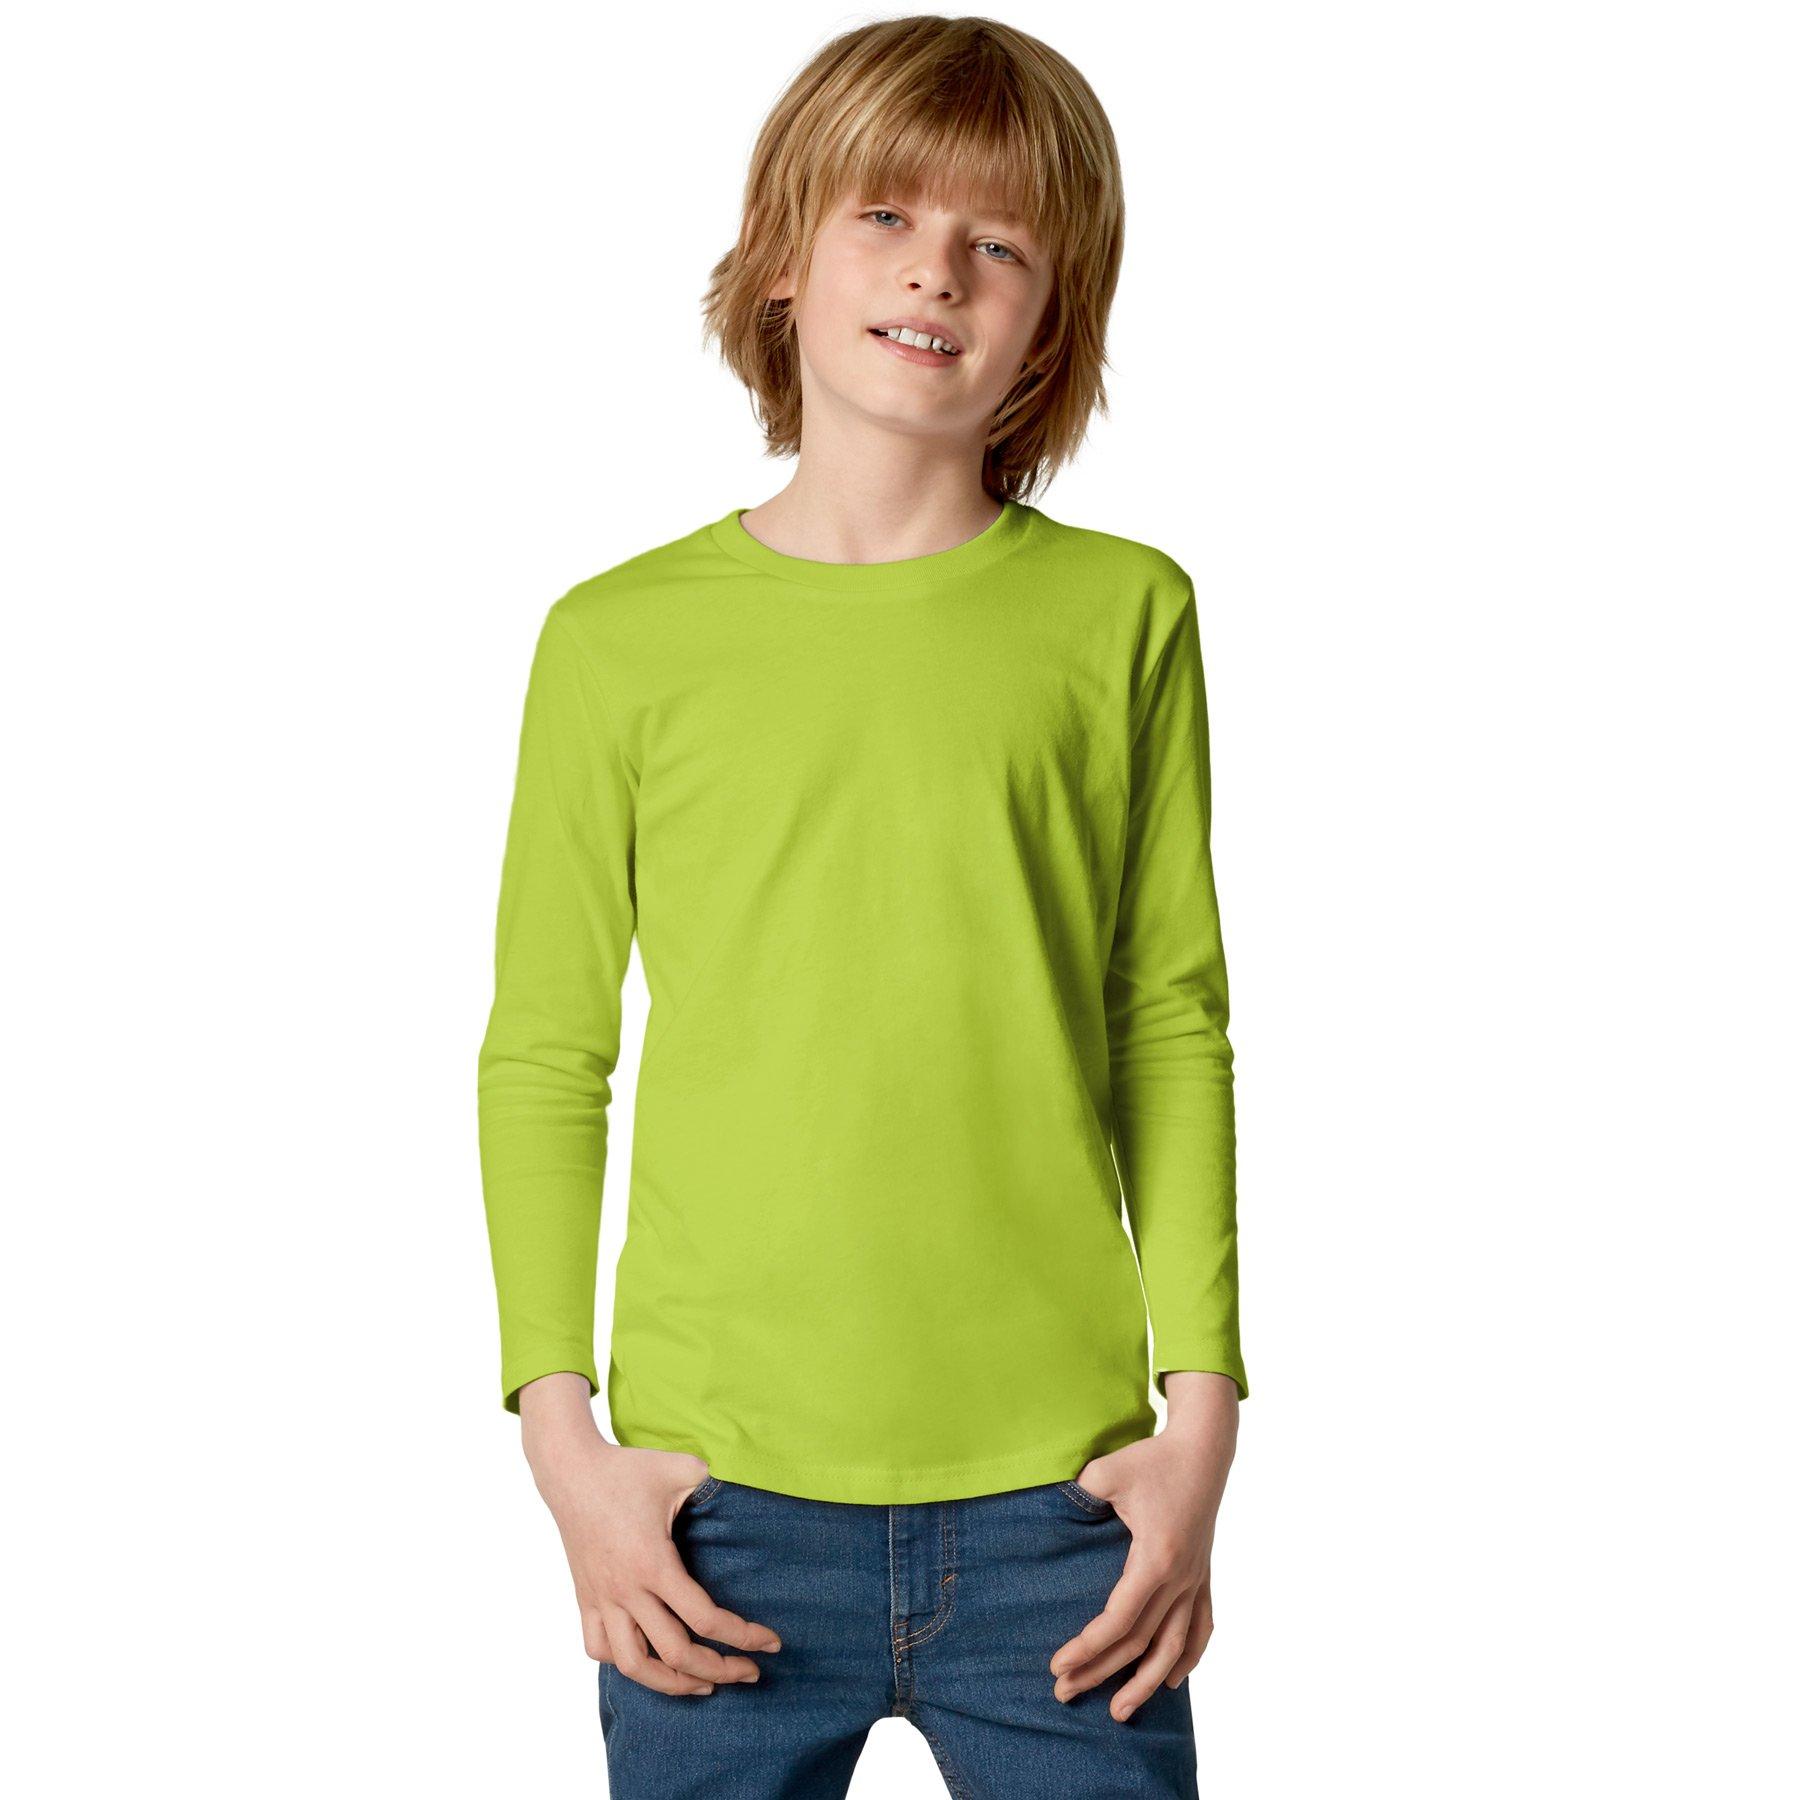 Langarm-shirt Kinder Jungen Hellgrün 116 von Tectake